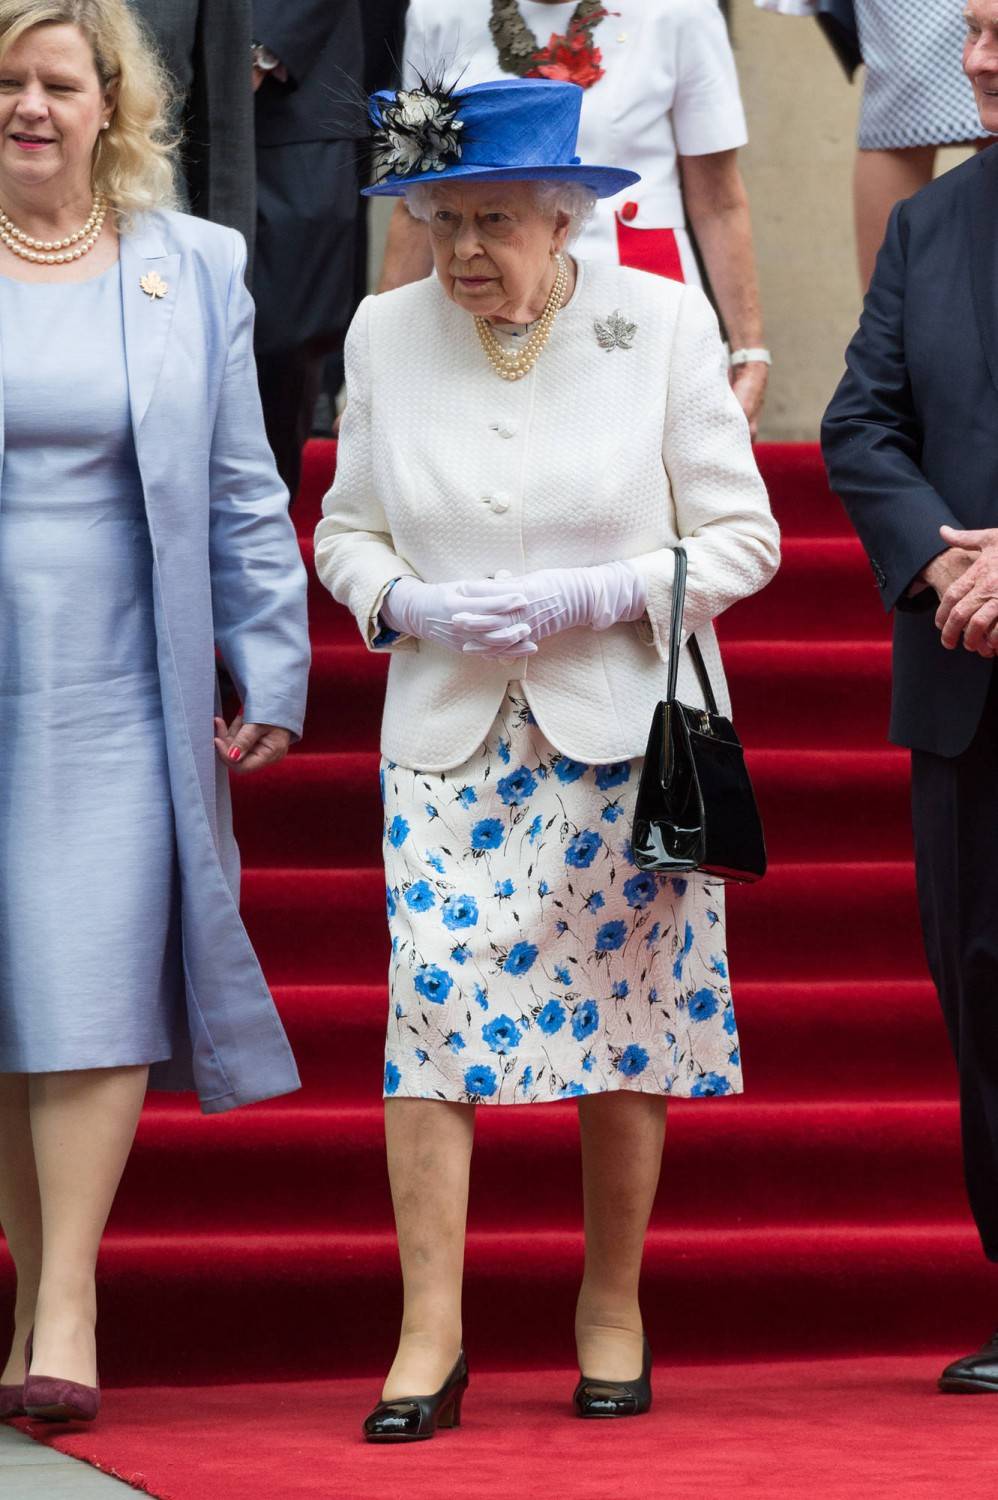 Uniformi, diademi e cappellini: ecco il dress code dei reali inglesi